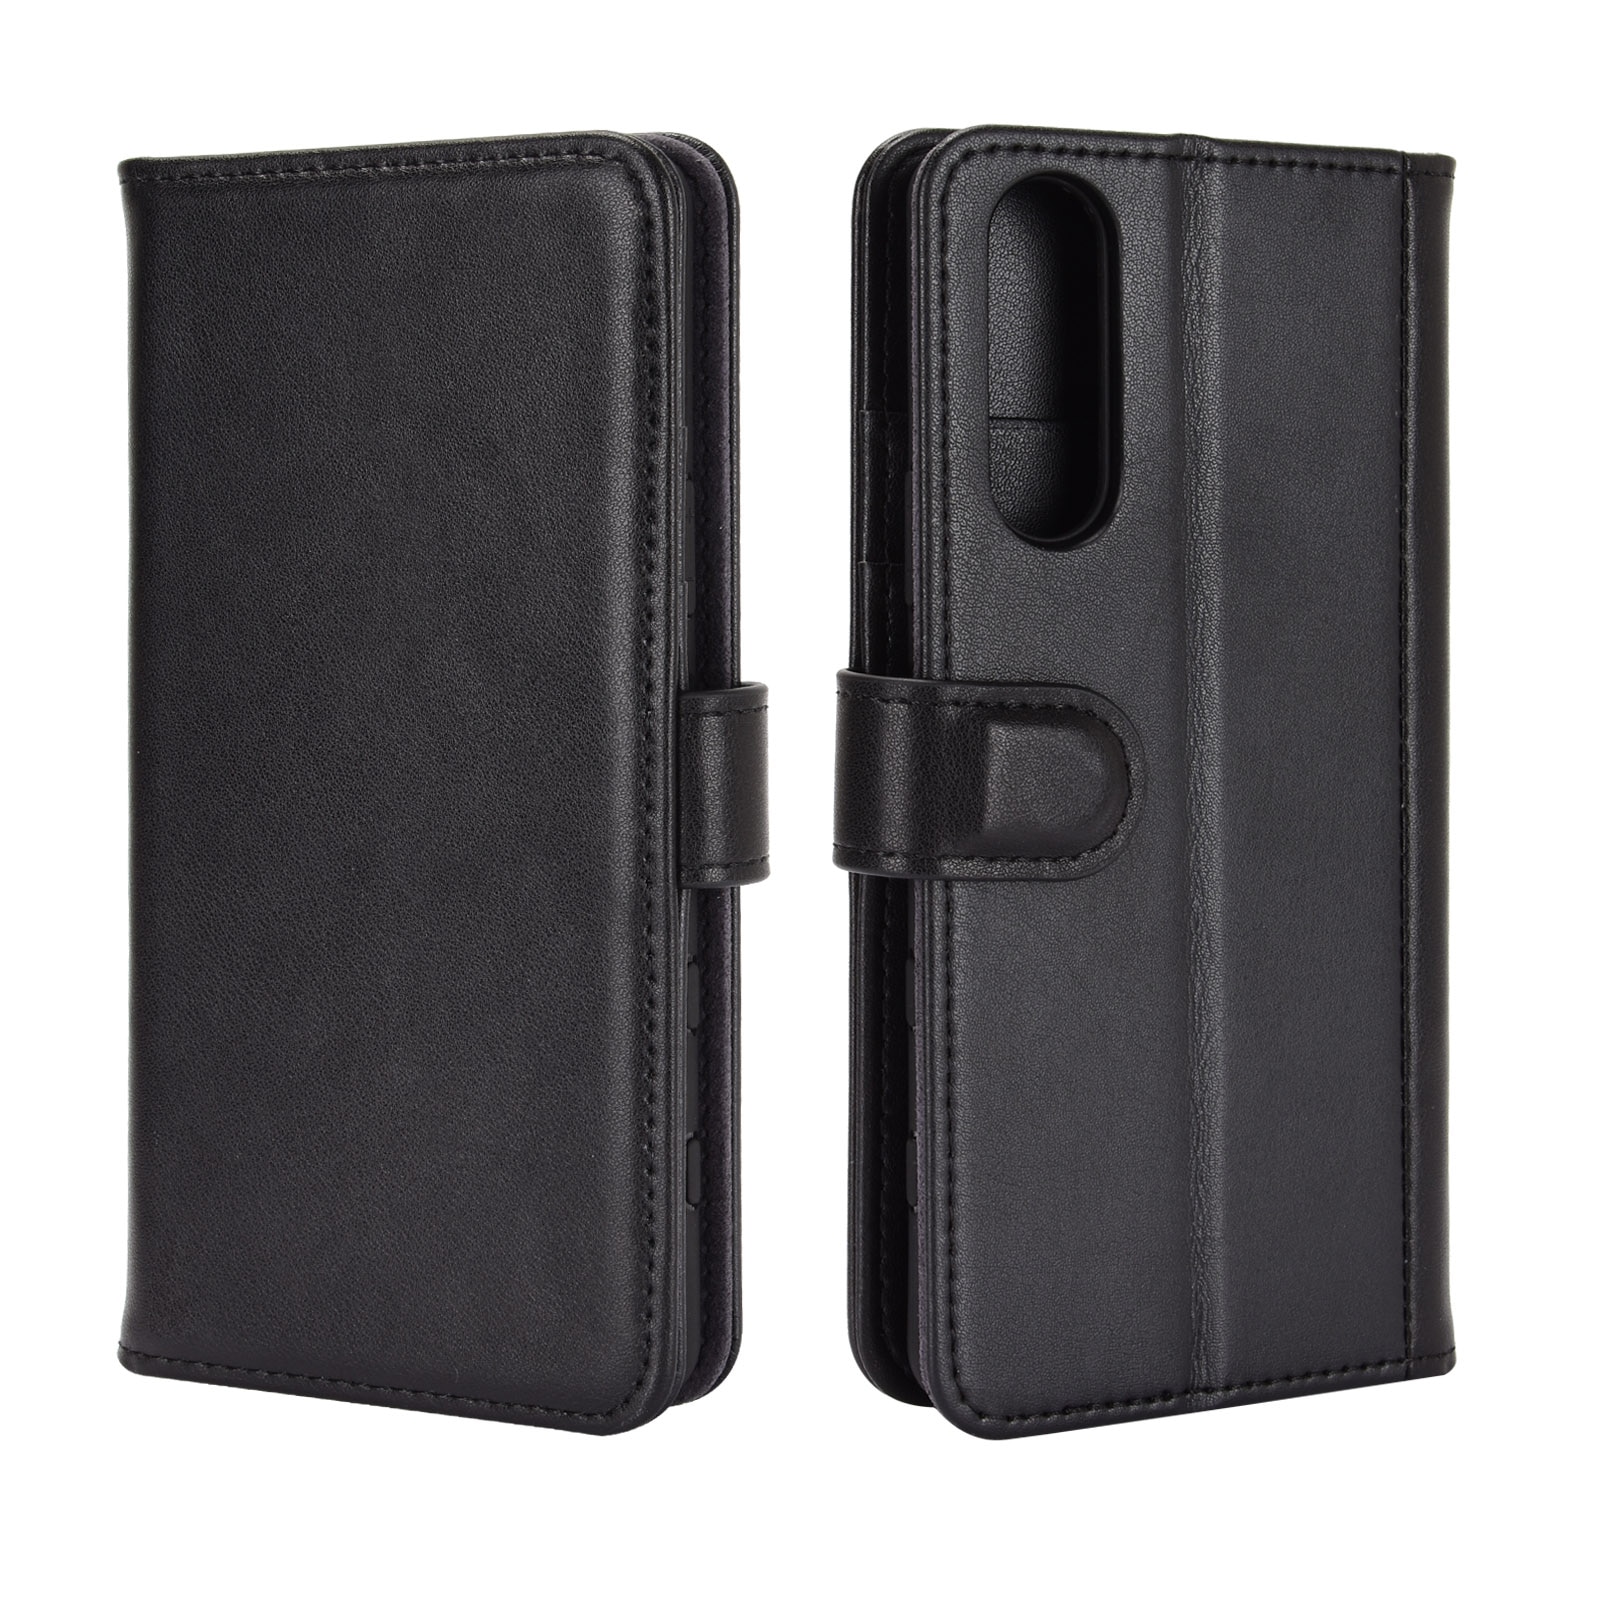 Sony Xperia 10 II Plånboksfodral i Äkta Läder, svart